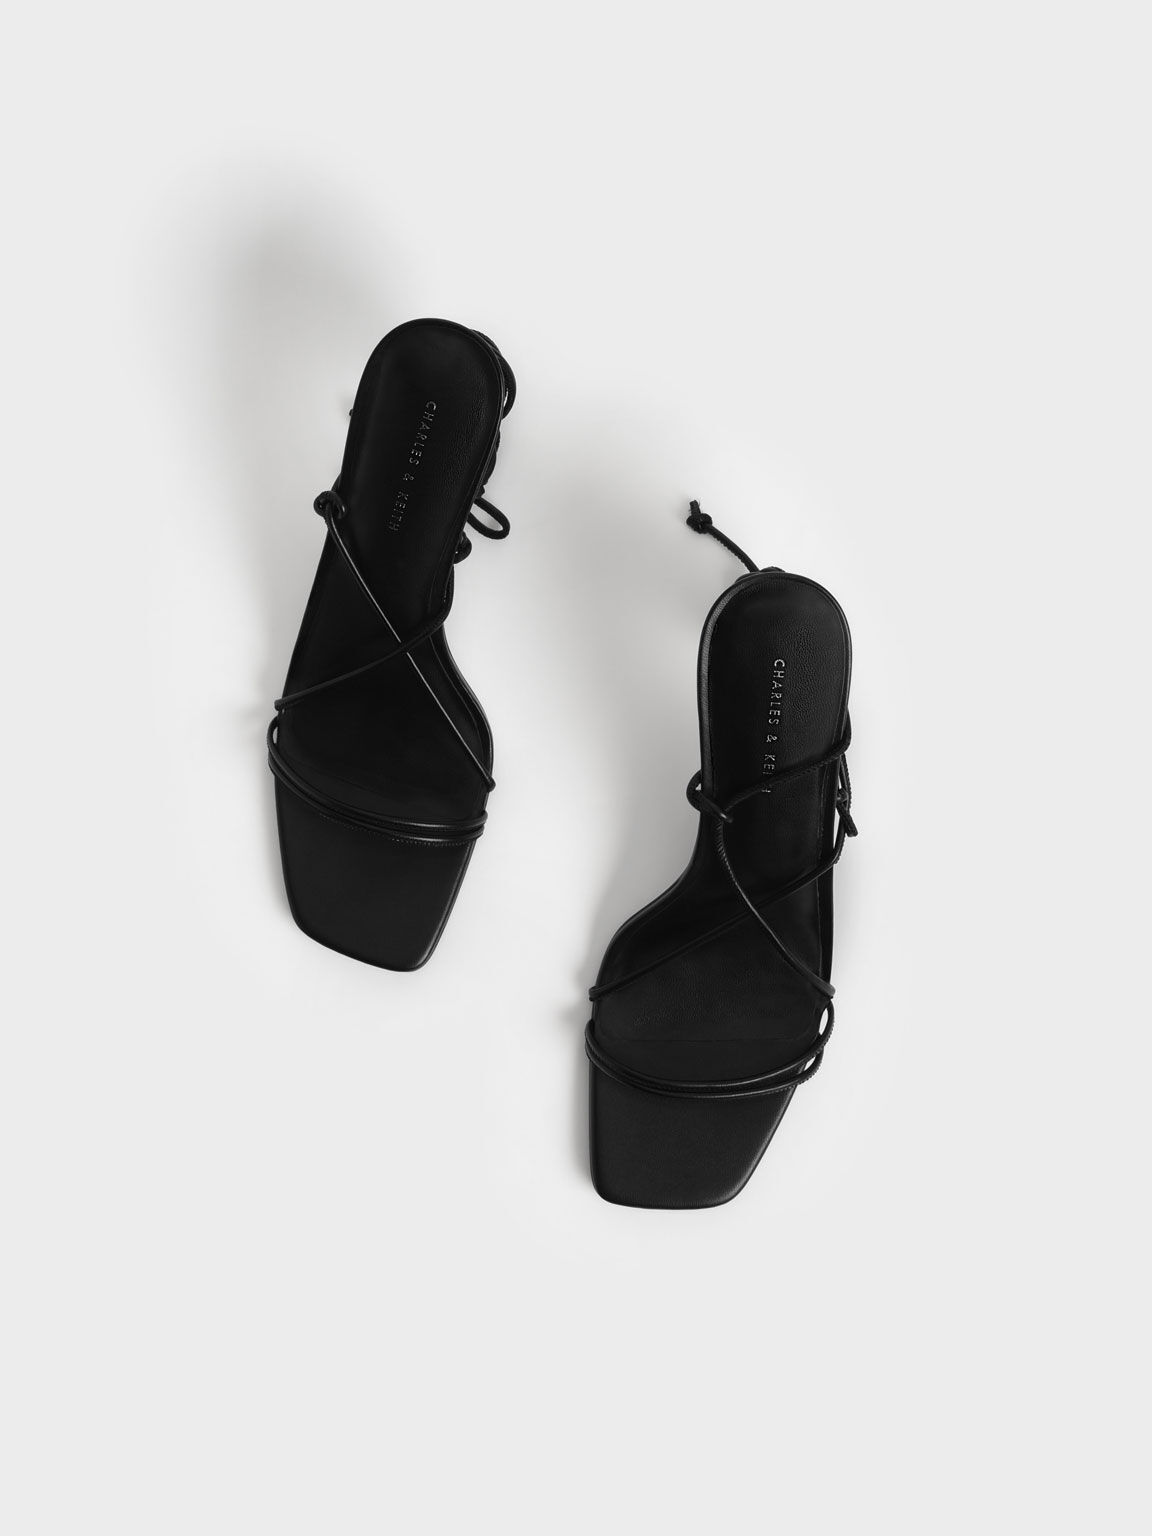 Strappy Tie-Around Stiletto Sandals, Black, hi-res